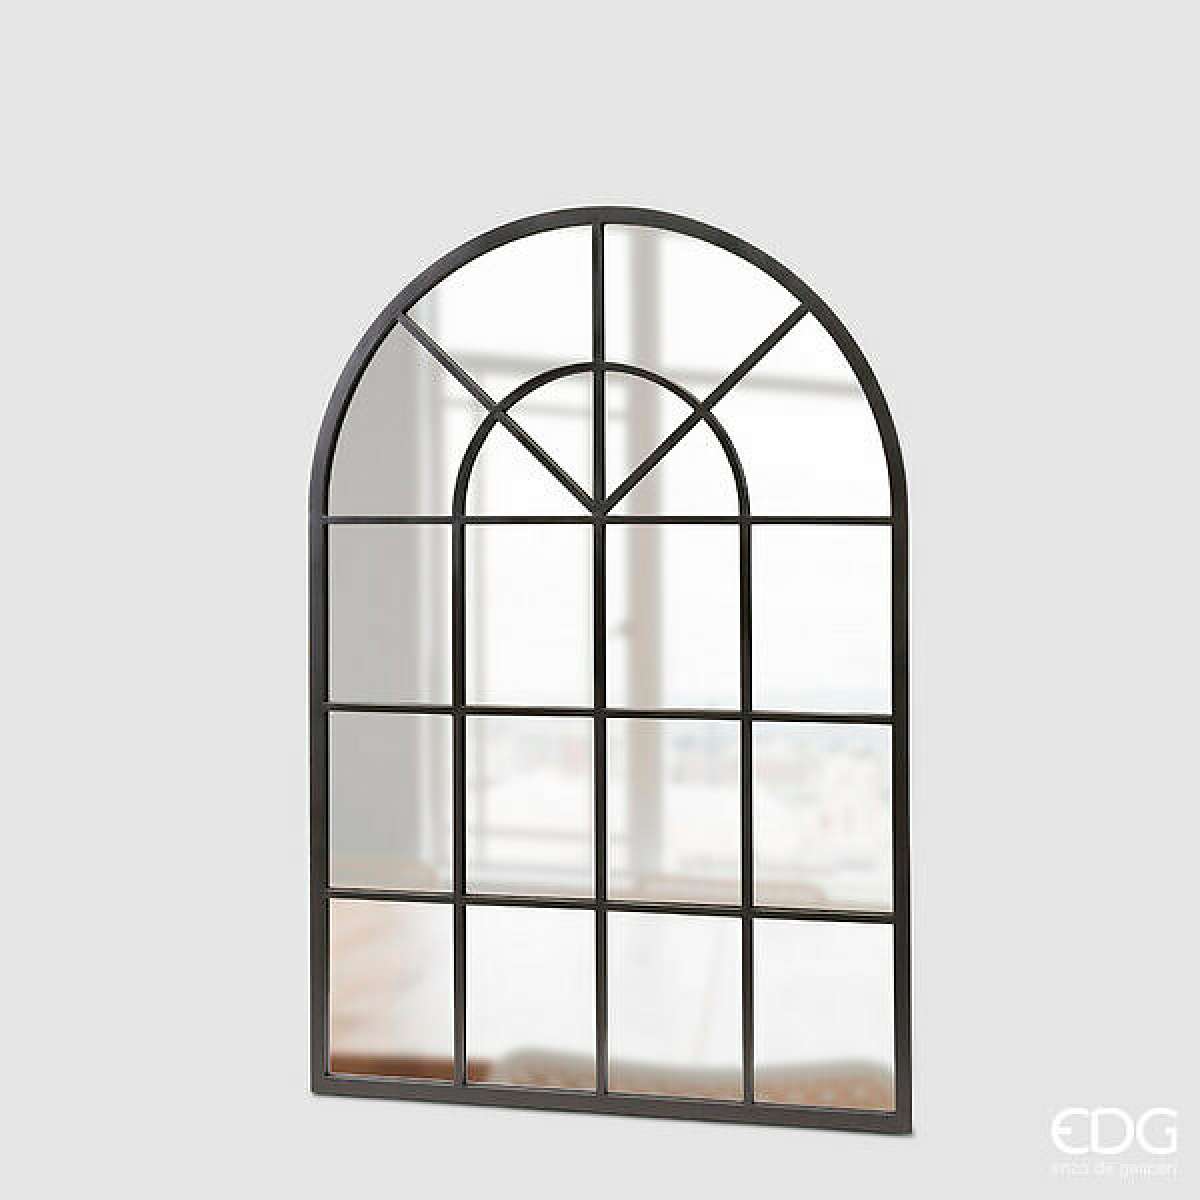 Immagine del prodotto Specchio Window Campana in Metallo Nero h 135 x 92 x 2 cm | EDG Enzo De Gasperi